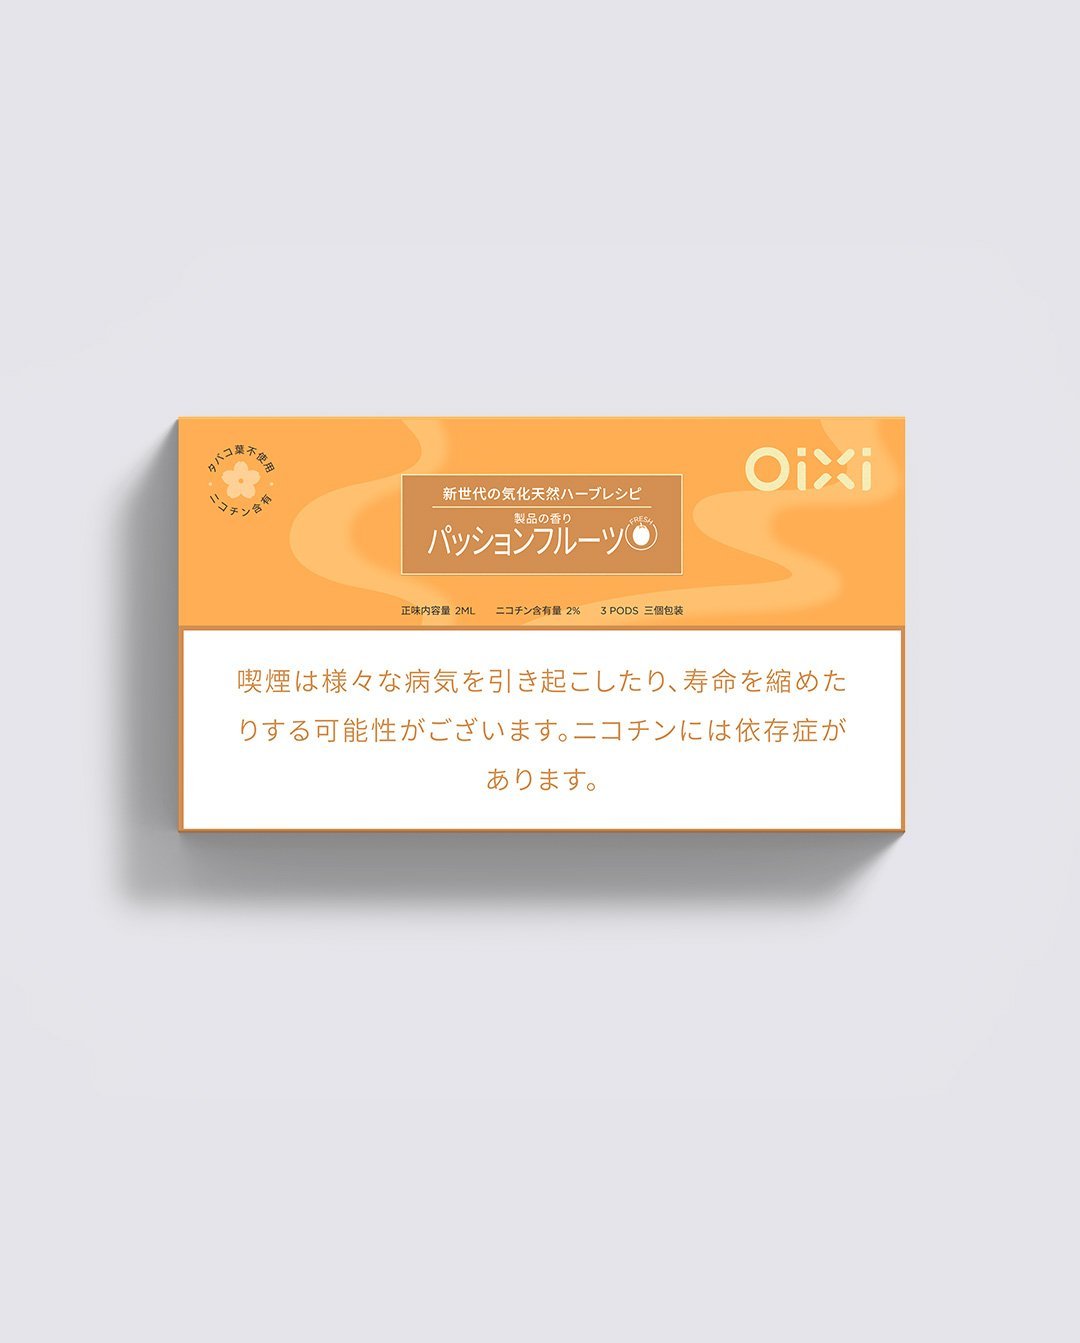 柑橘サイダー味標準パッケージ